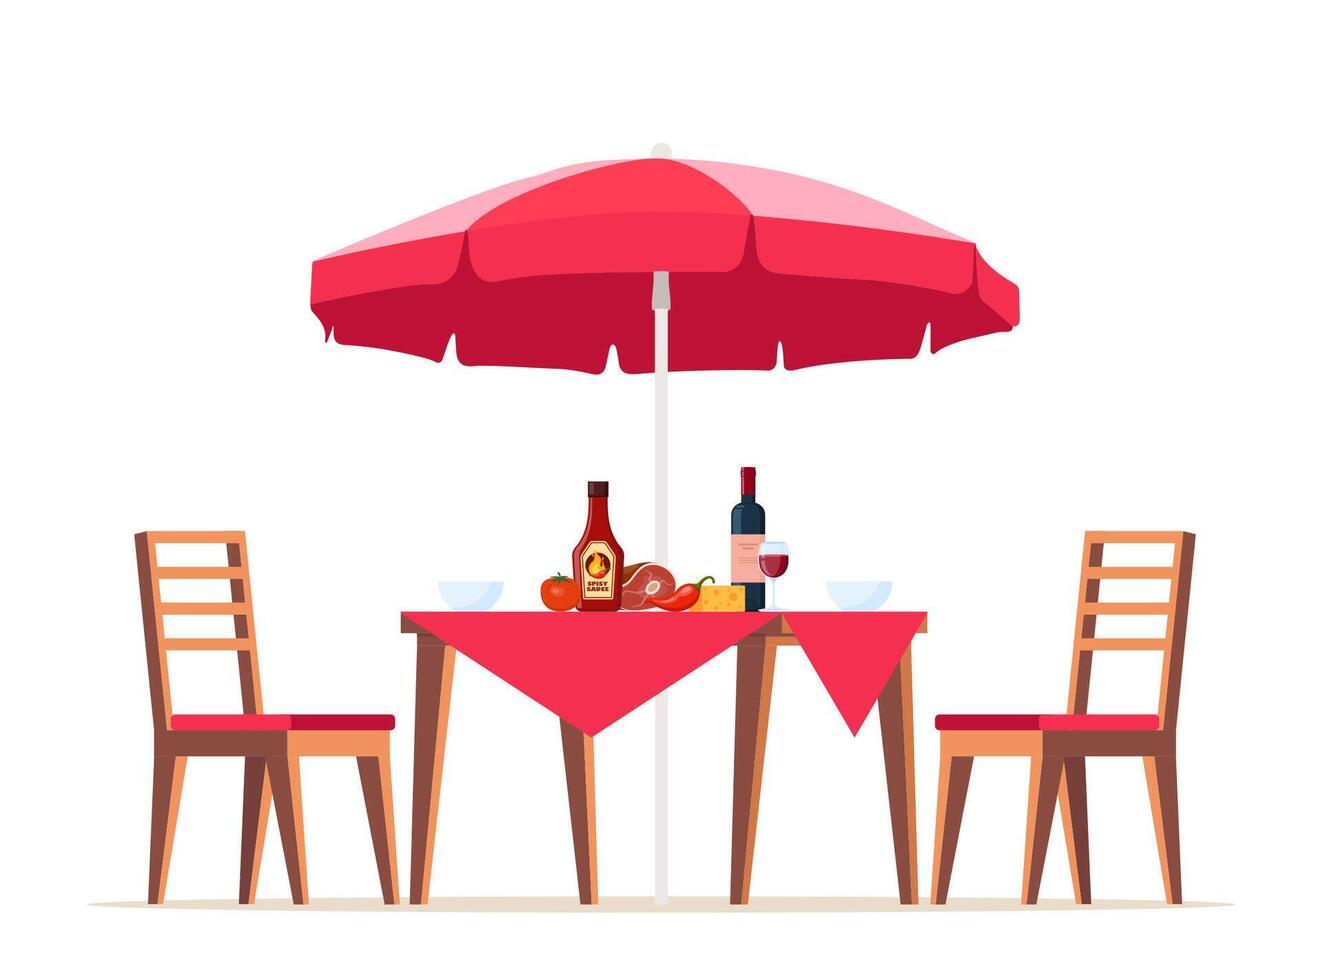 verano picnic mesa cubierto con un Manteles, sillas y sombrilla. comida en el mesa para familia parilla, picnic, parrilla fiesta. vector ilustración.